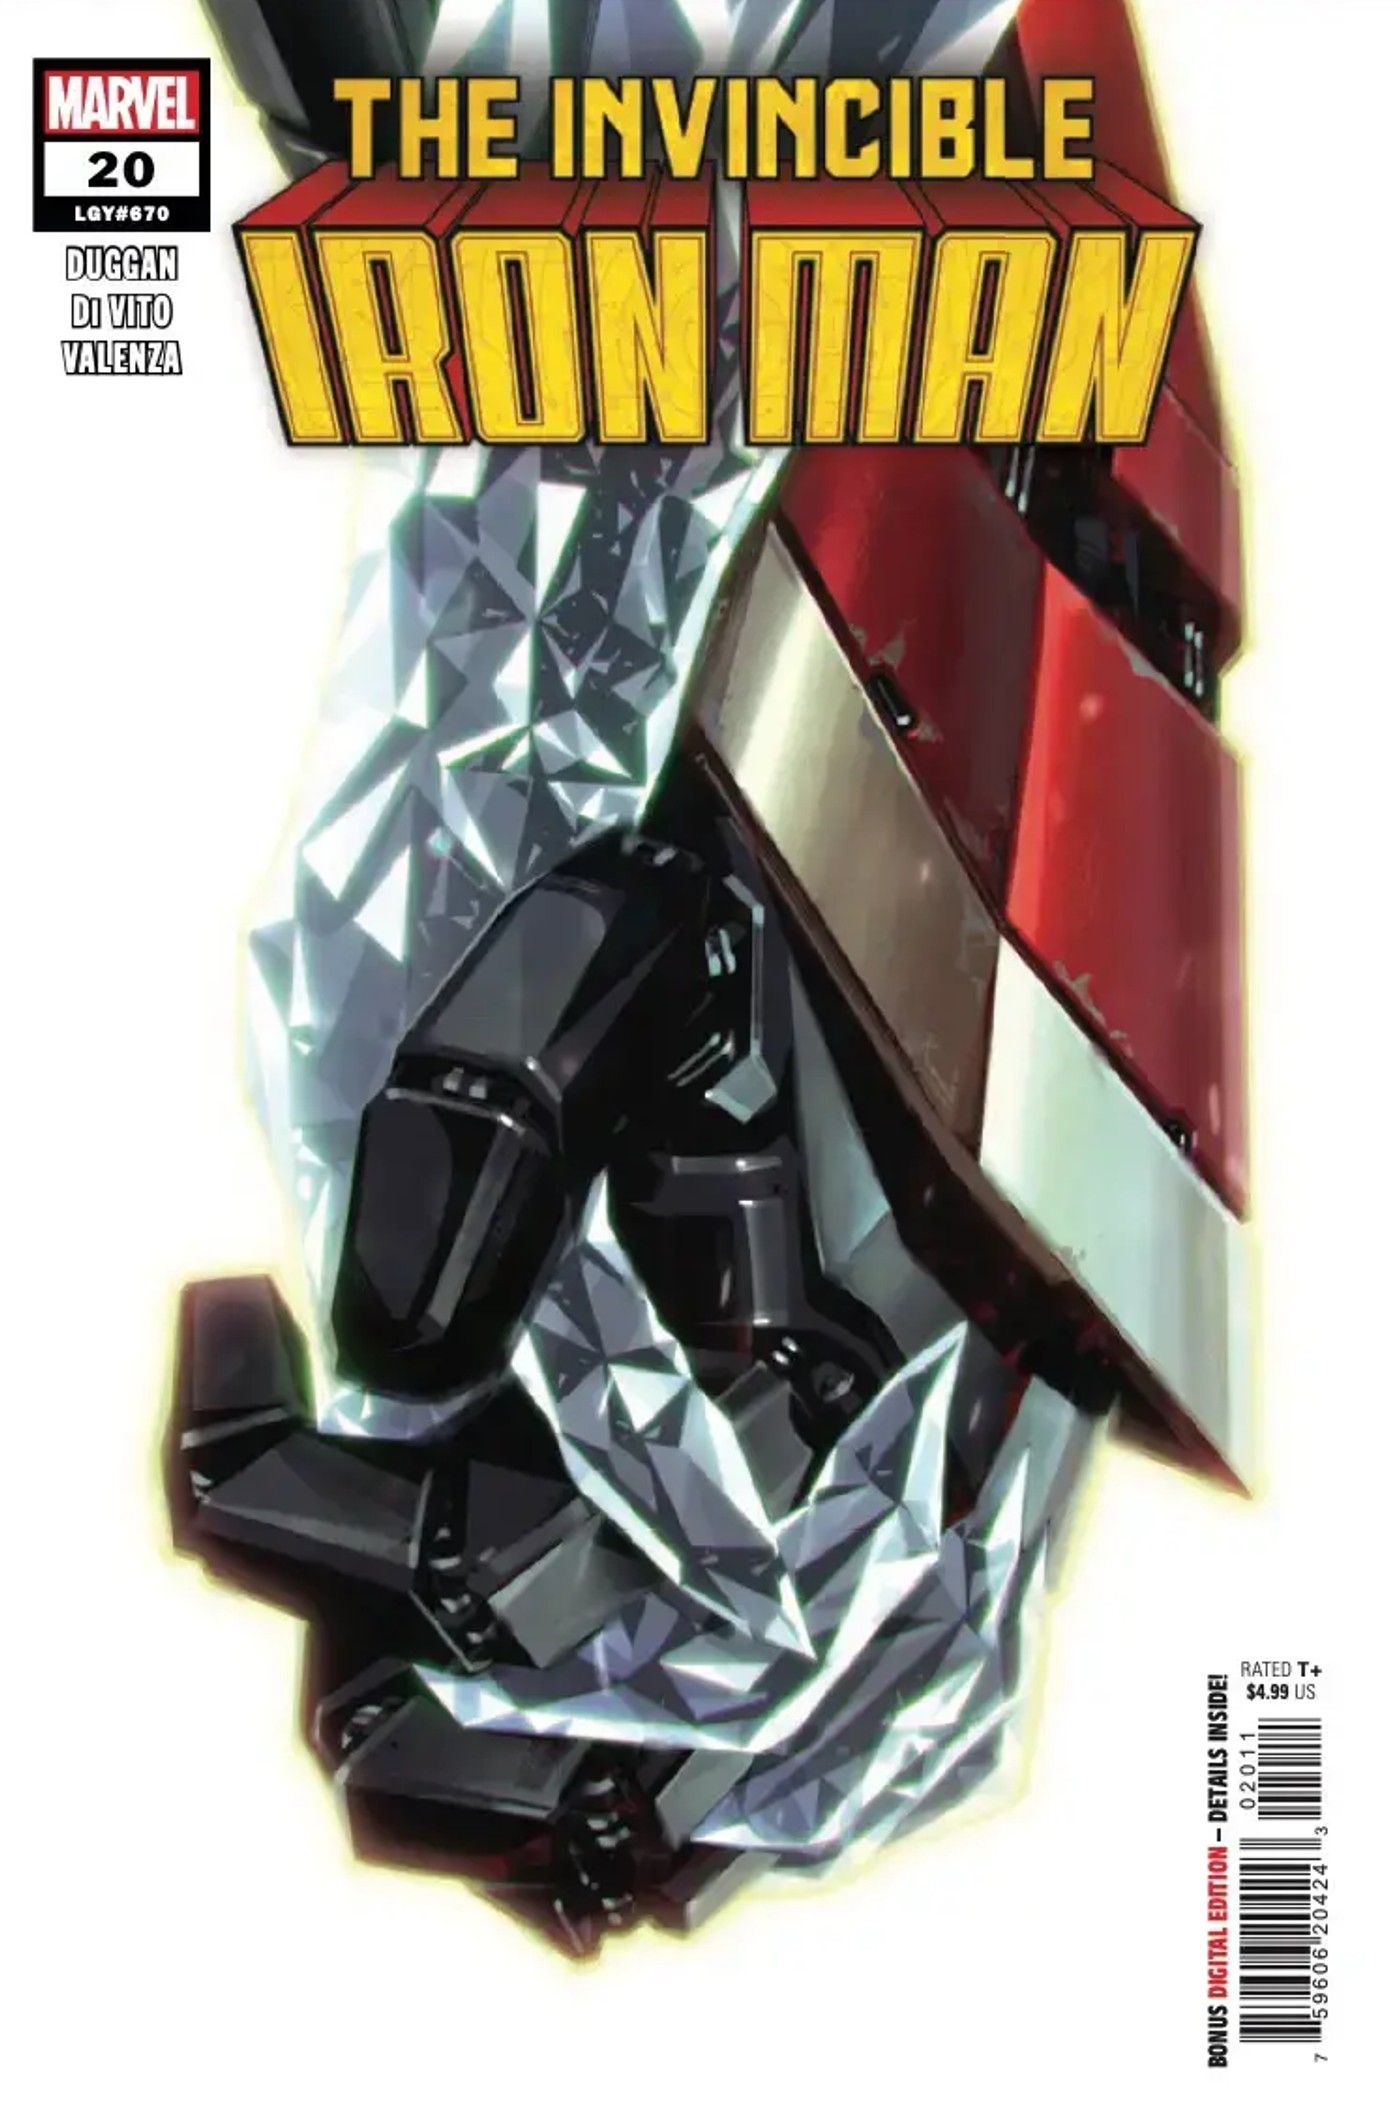 Capa de Invincible Iron Man #20, Homem de Ferro segurando a mão de diamante de Emma Frost.